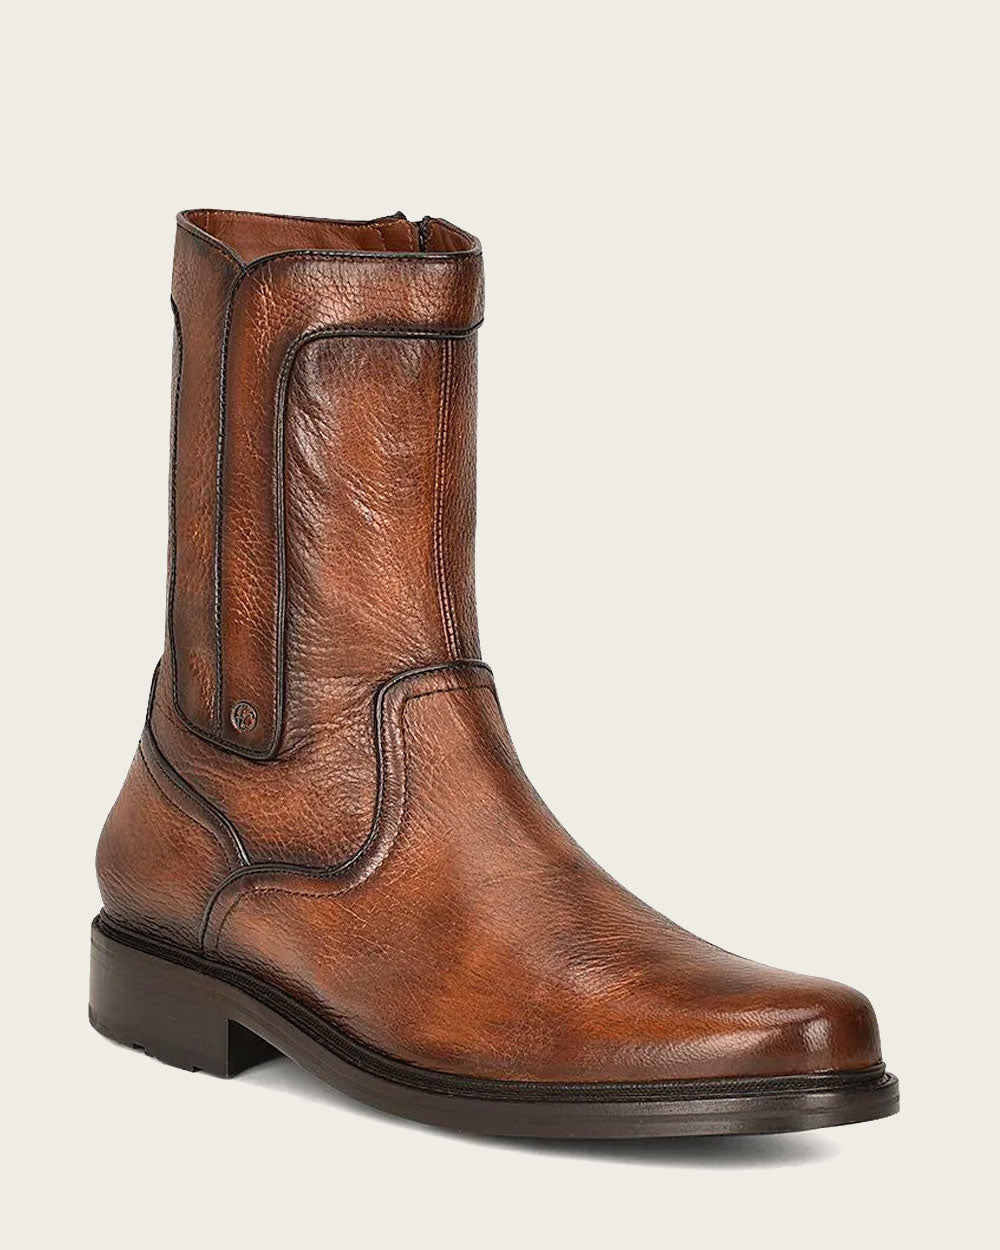 Cuadra Deer Skin Boots: Timeless elegance & unmatched comfort for formal wear. 